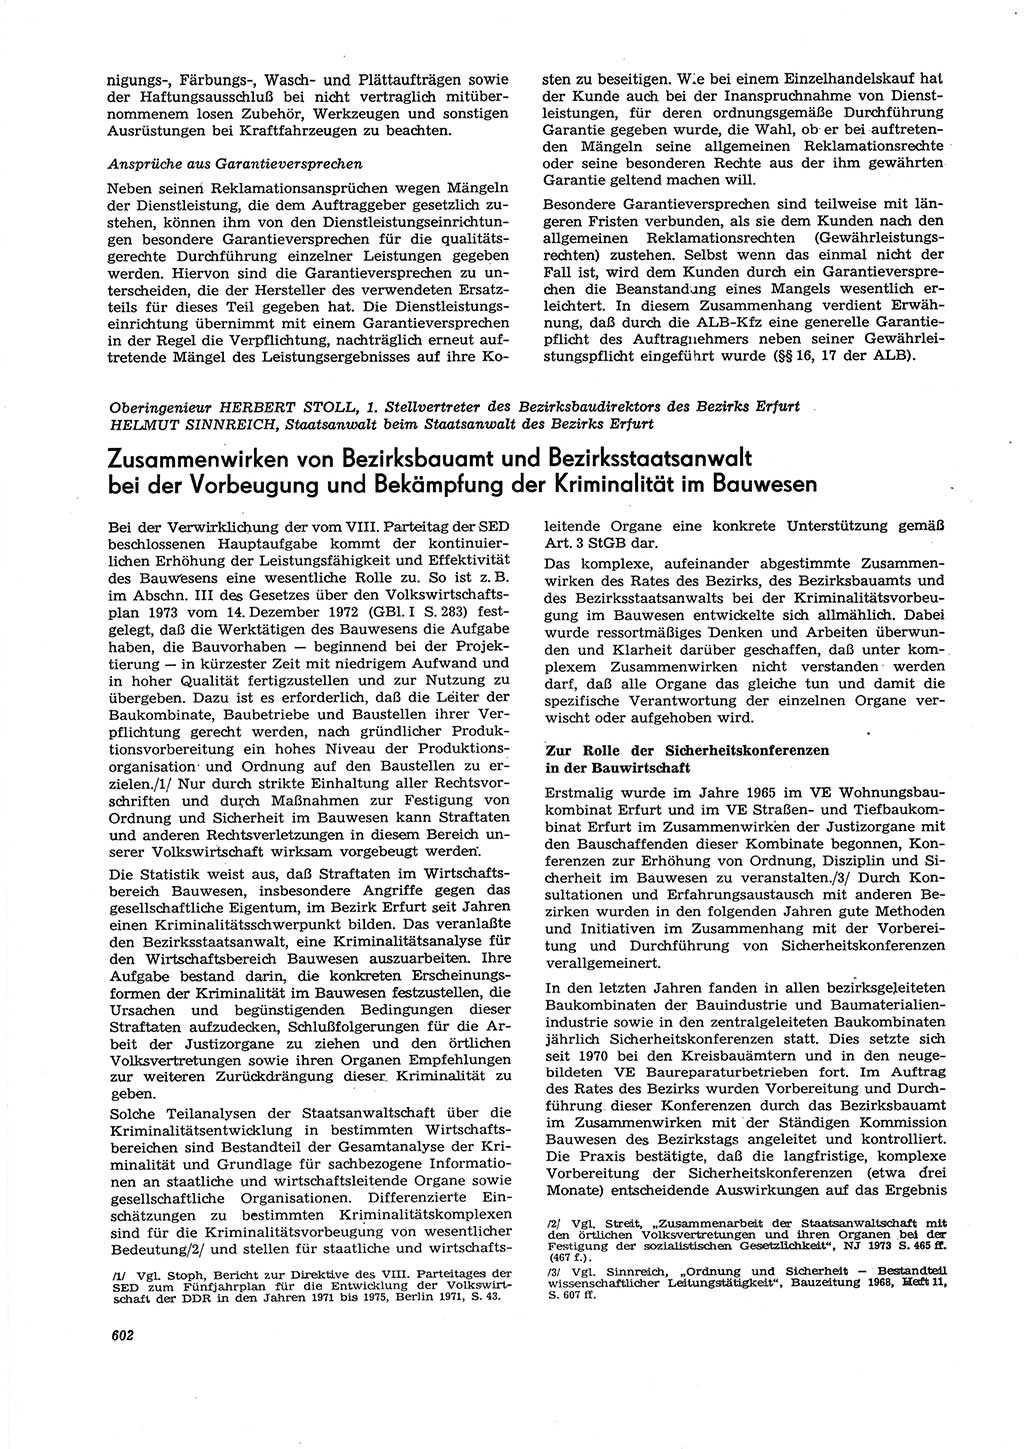 Neue Justiz (NJ), Zeitschrift für Recht und Rechtswissenschaft [Deutsche Demokratische Republik (DDR)], 27. Jahrgang 1973, Seite 602 (NJ DDR 1973, S. 602)